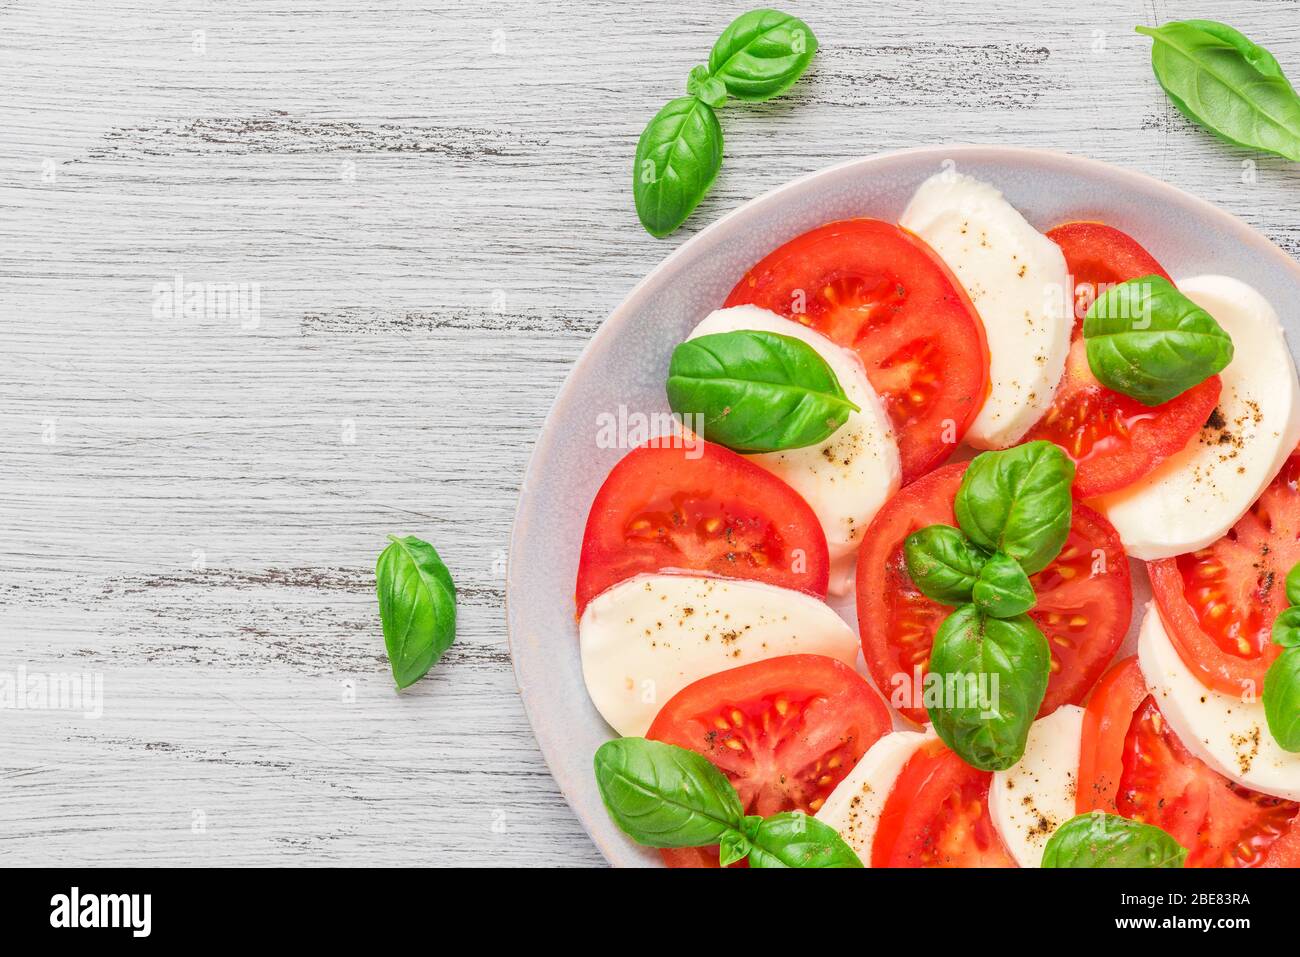 Insalata di caprese sana con pomodori maturi e mozzarella con foglie di basilico fresco. Cucina italiana, vista dall'alto con spazio per fotocopie Foto Stock